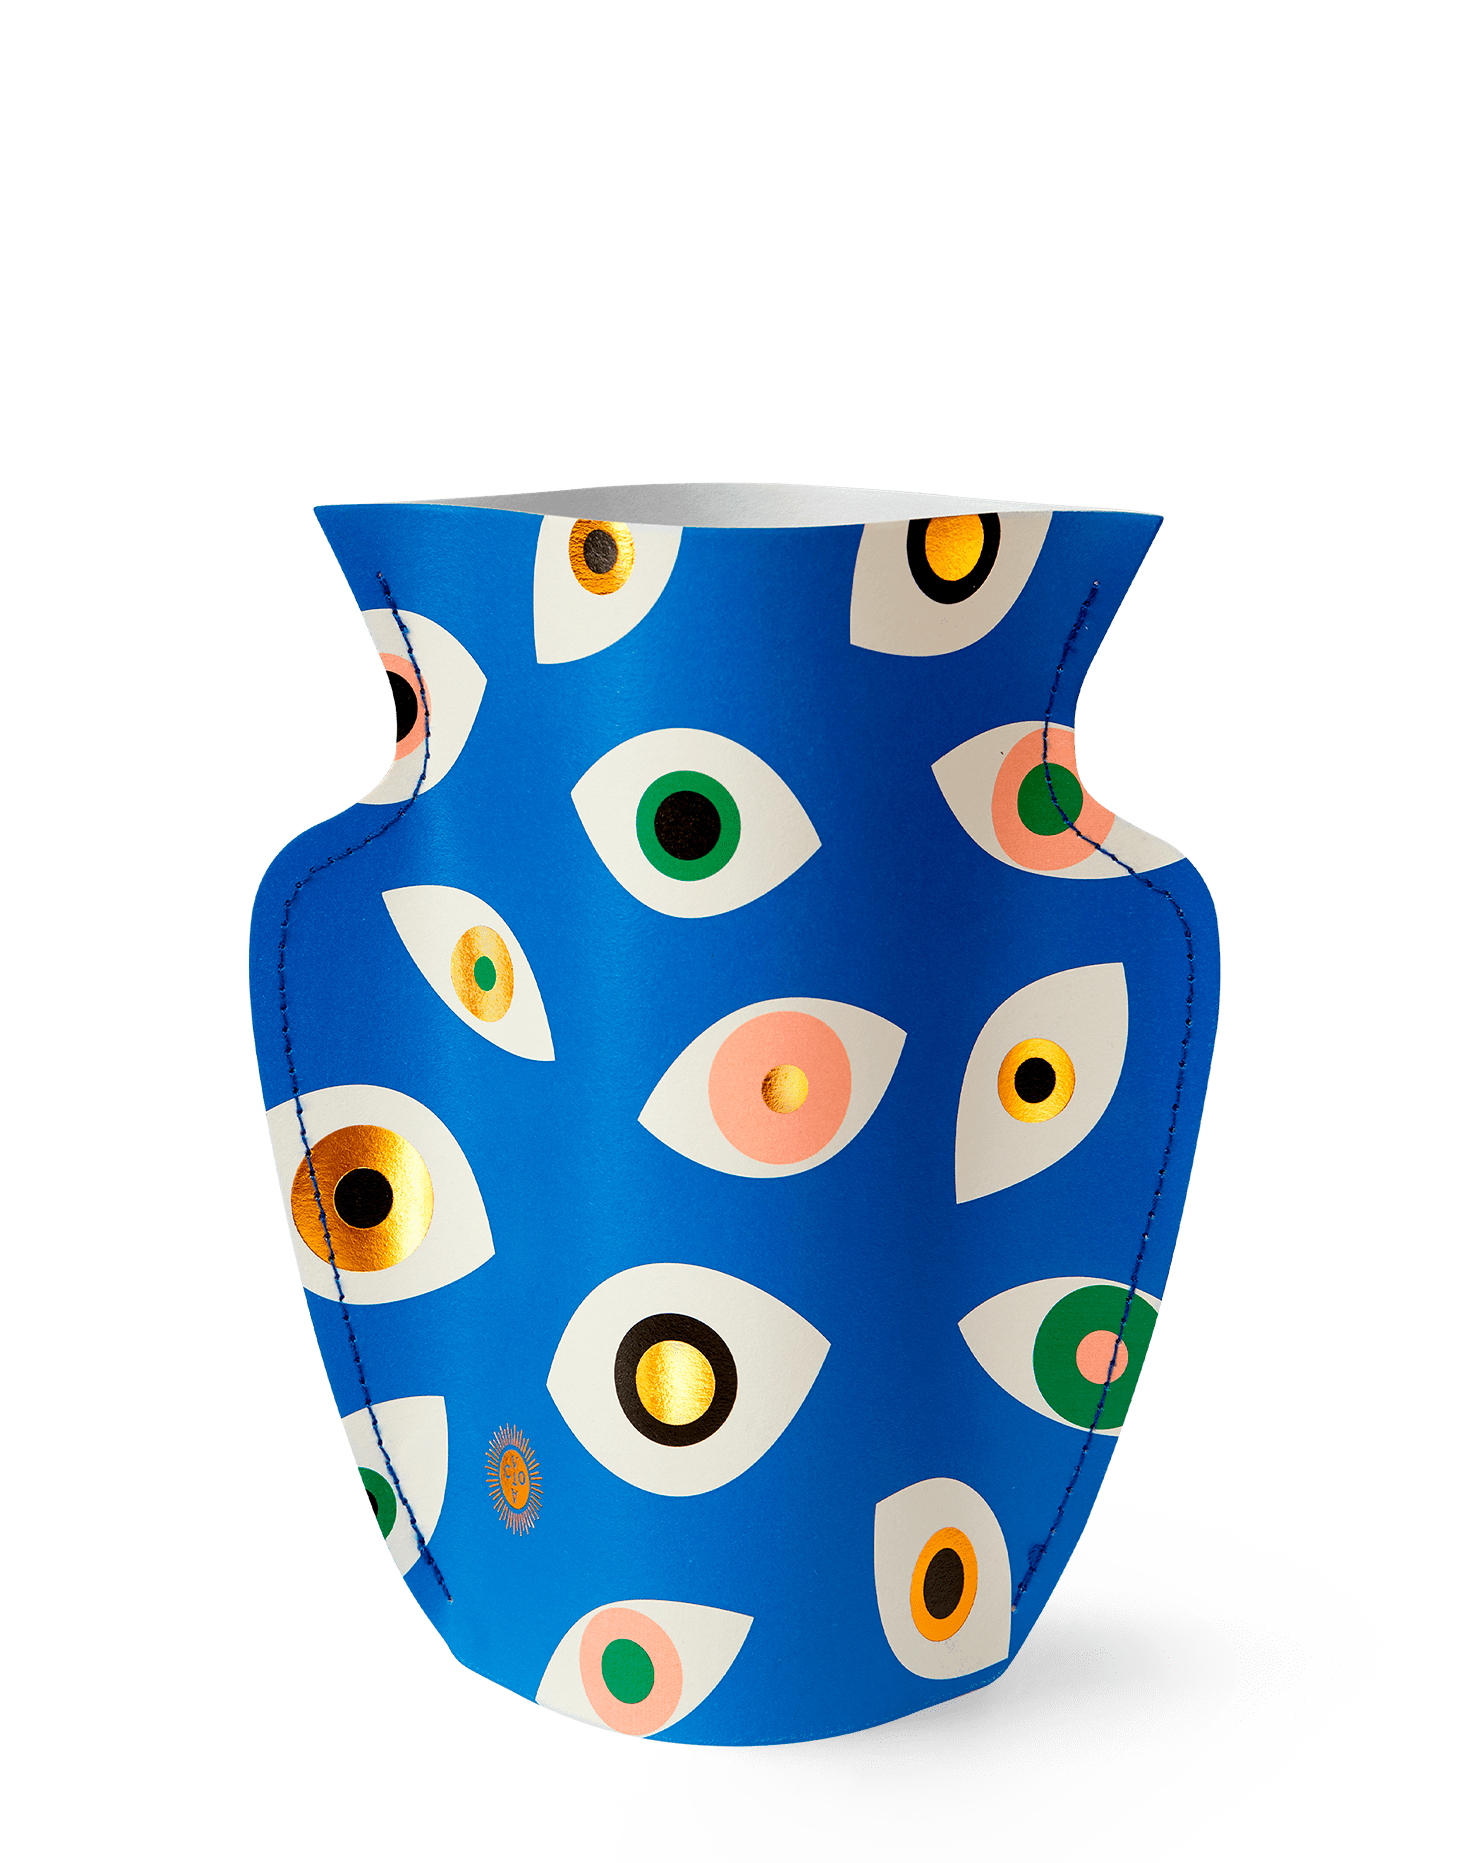 Octaevo Vase Blue Paper Evil Eye Vase by Octaevo - Large or Mini